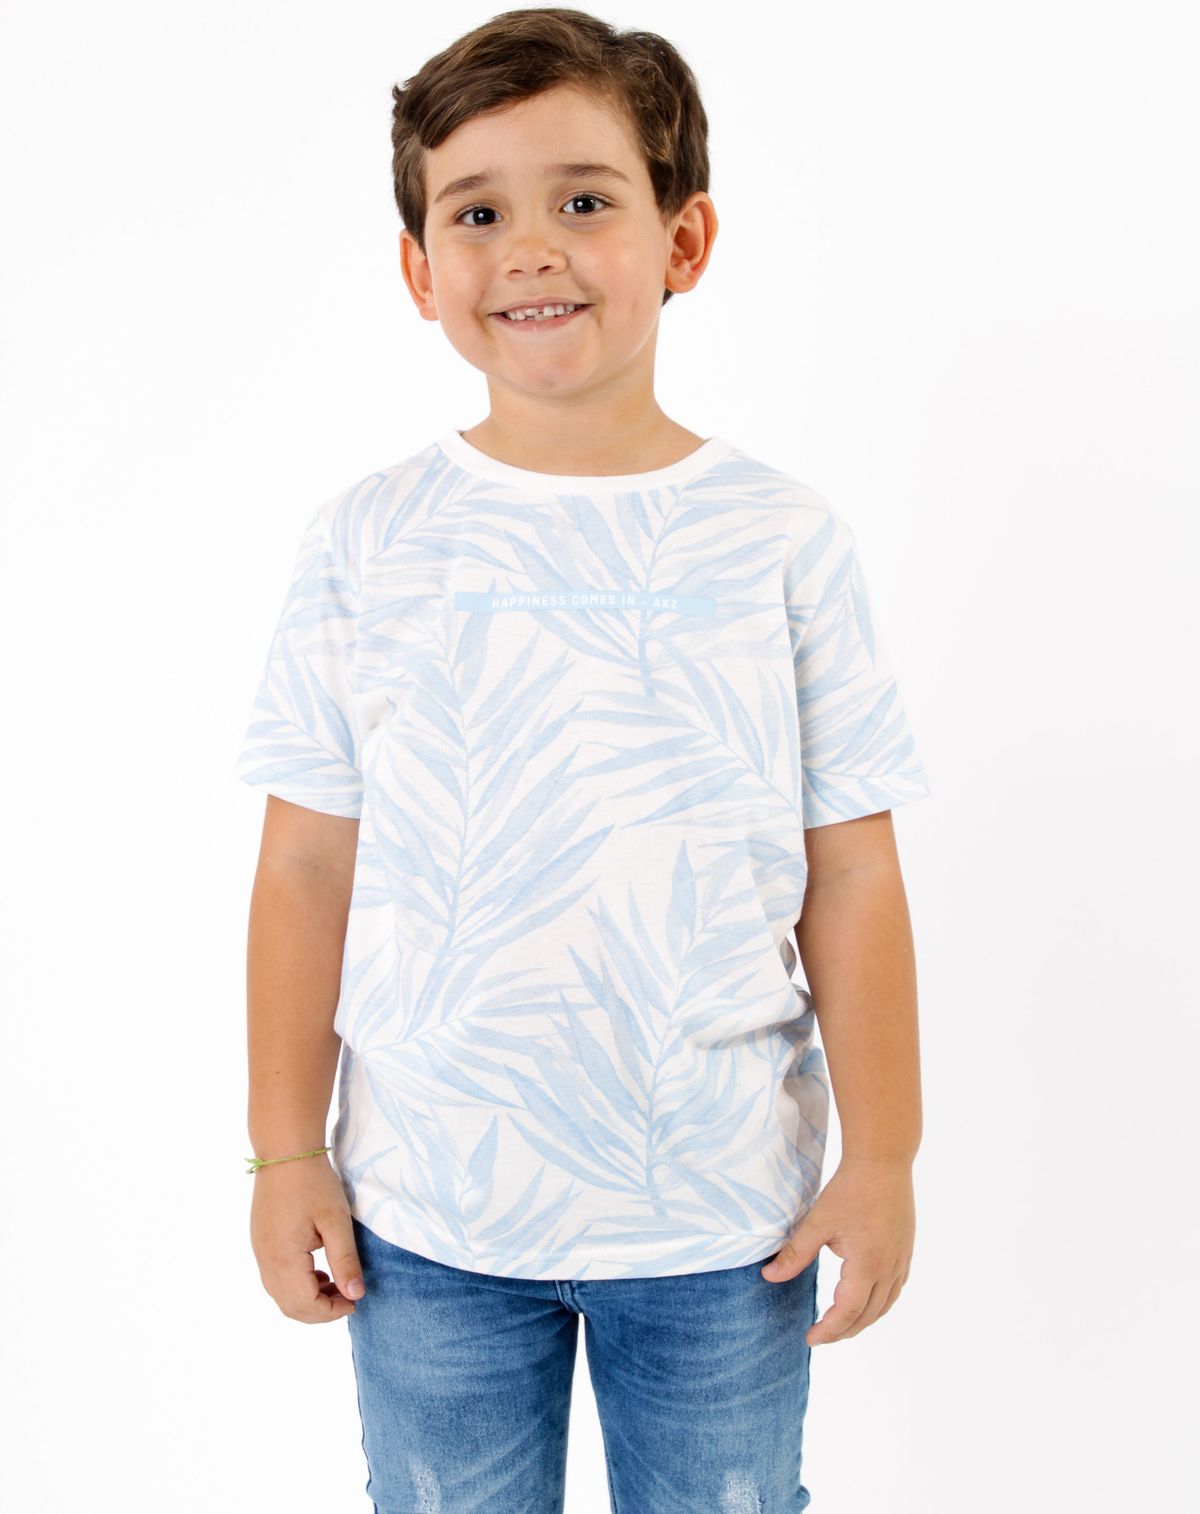 682302001-camiseta-infantil-menino-manga-curta-estampada-azul-4-330